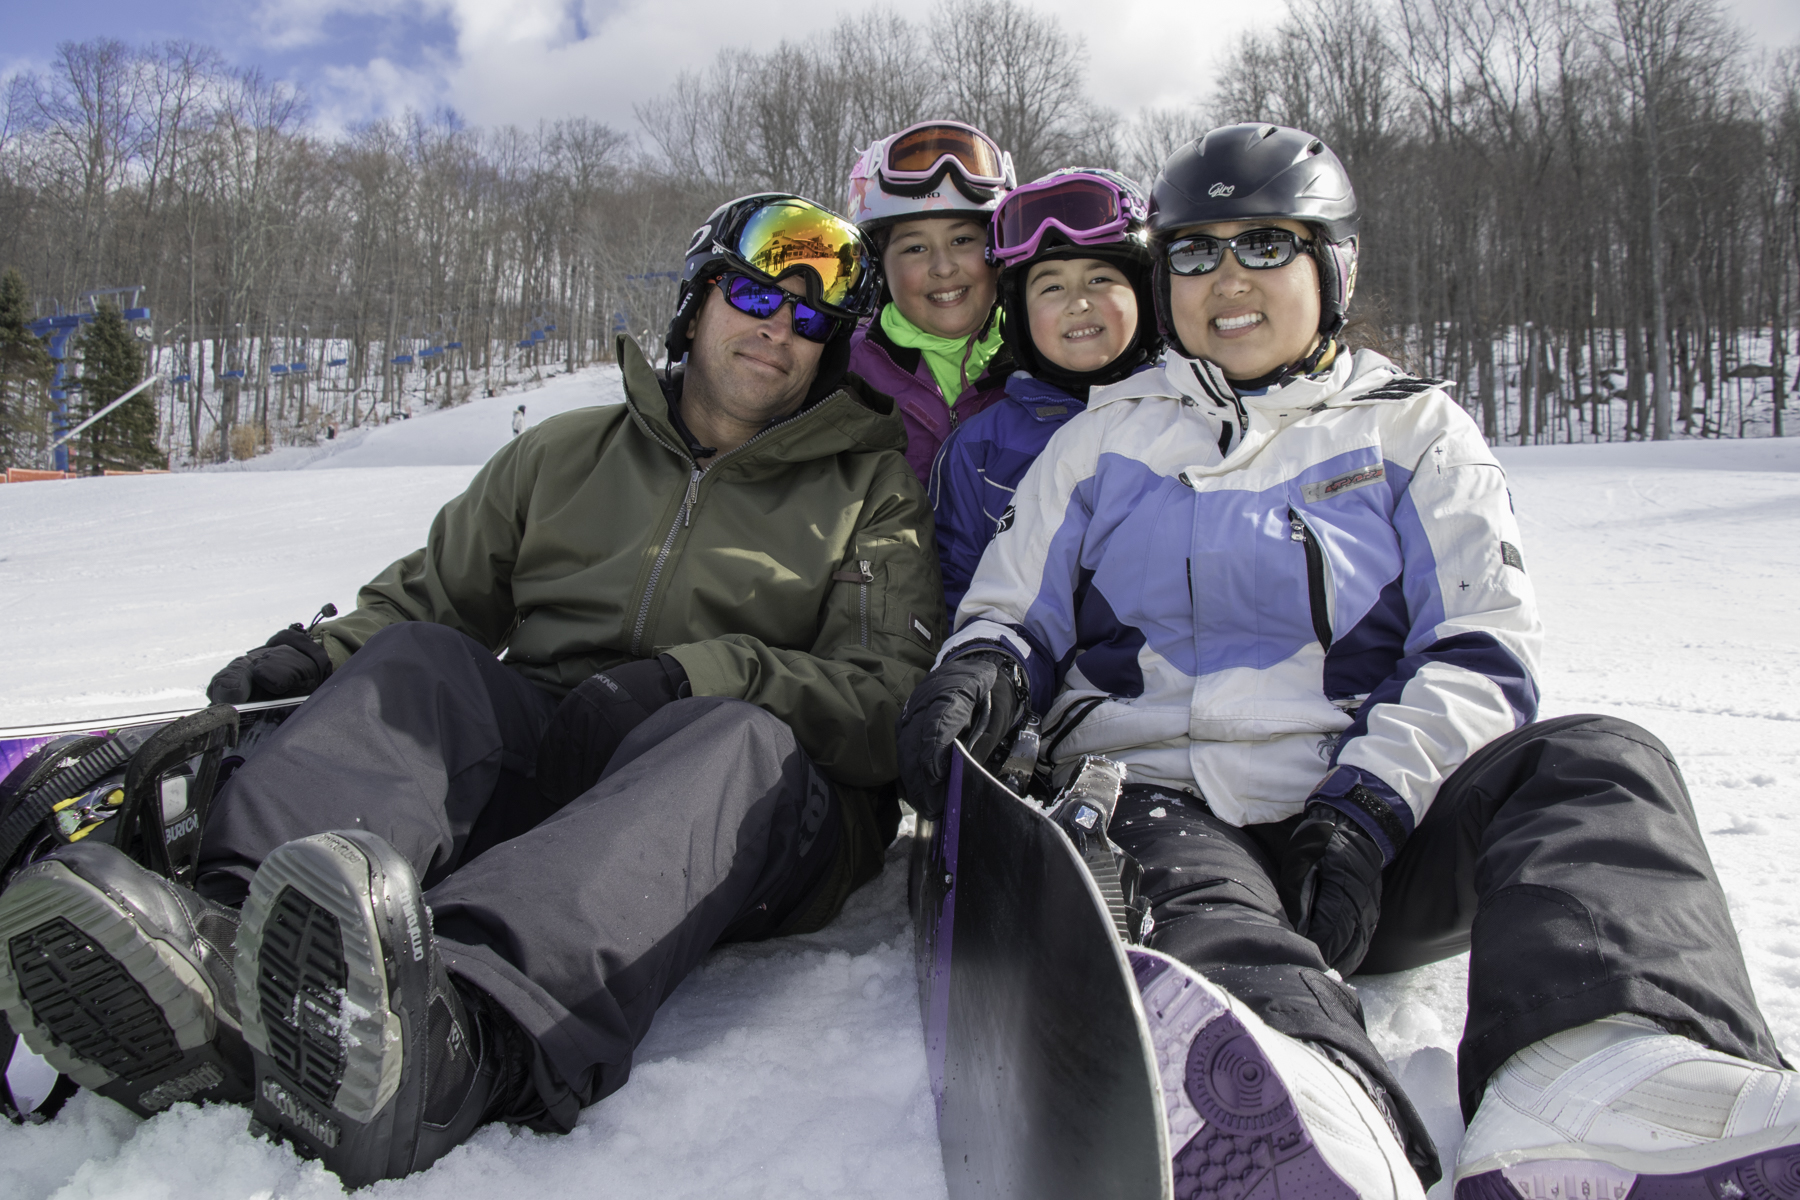 Family at Shawnee Mountain Ski Area in the Poconos.